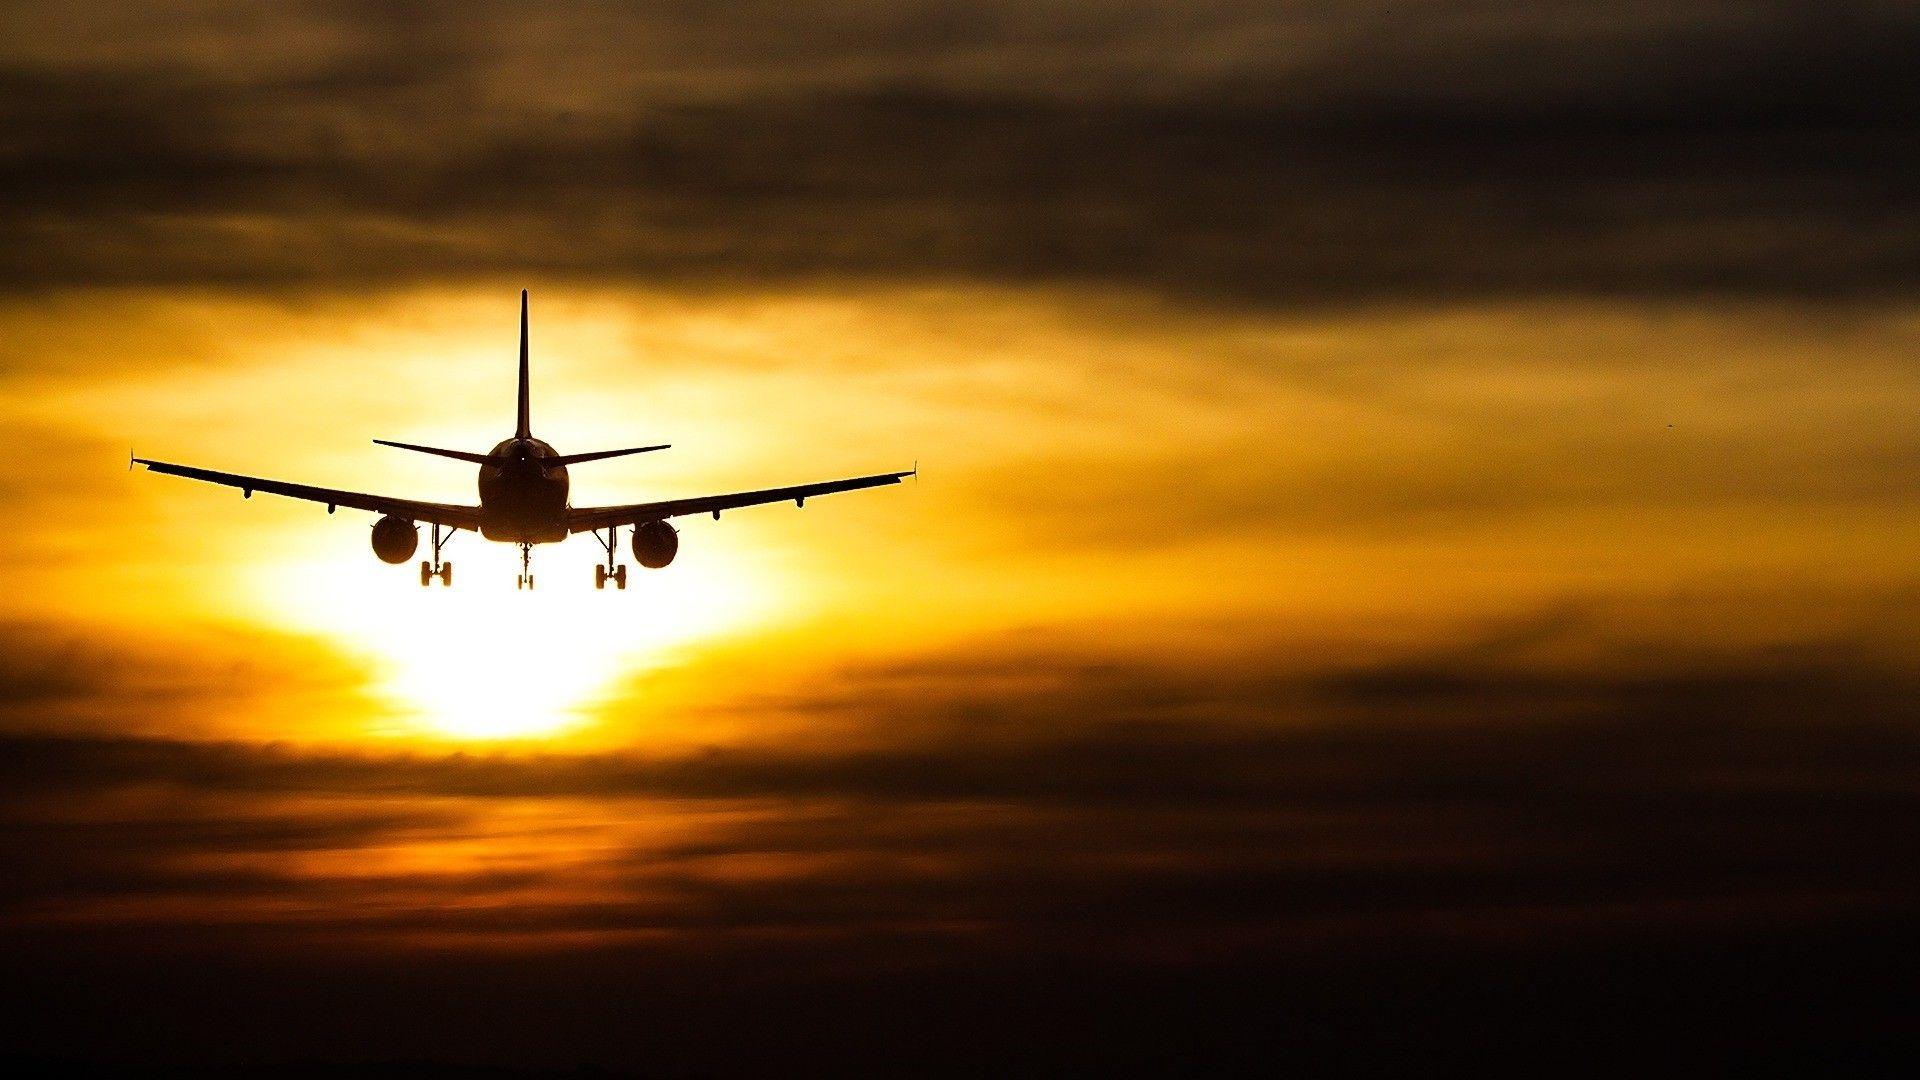 Sunset Passenger Plane Full HD Desktop Background. HD desktop, Passenger planes, Background desktop